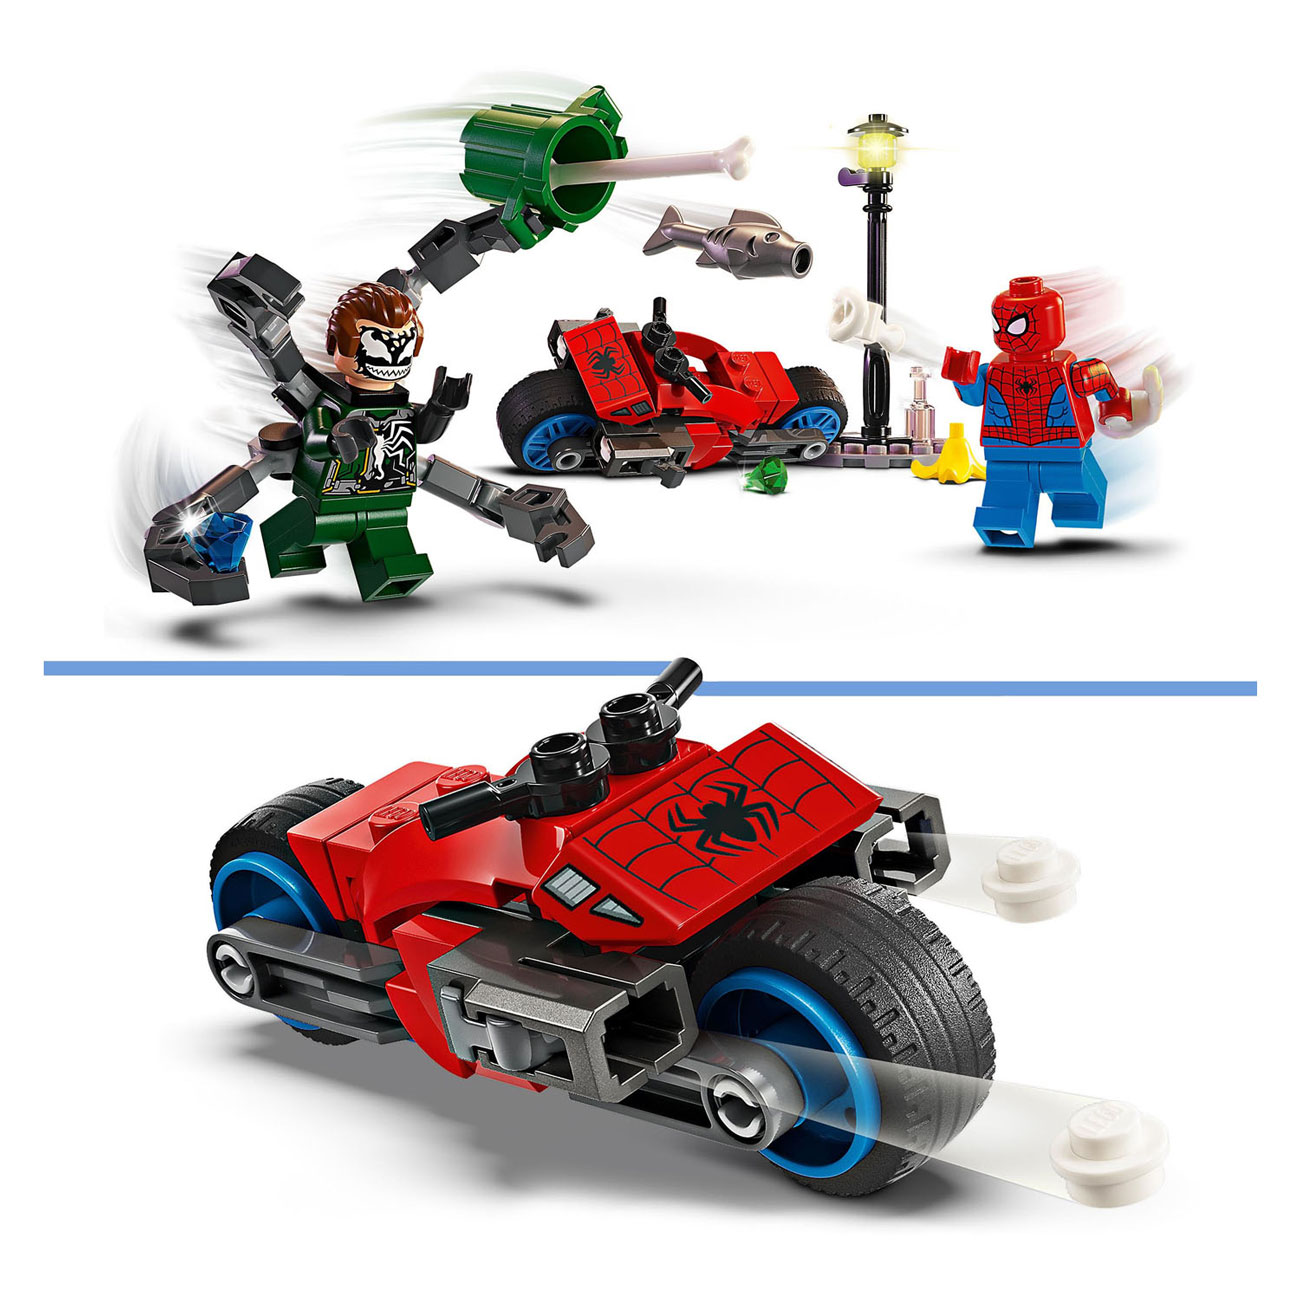 LEGO Super Heroes 76275 Motorachtervolging: Spider-Man vs. Doc Ock